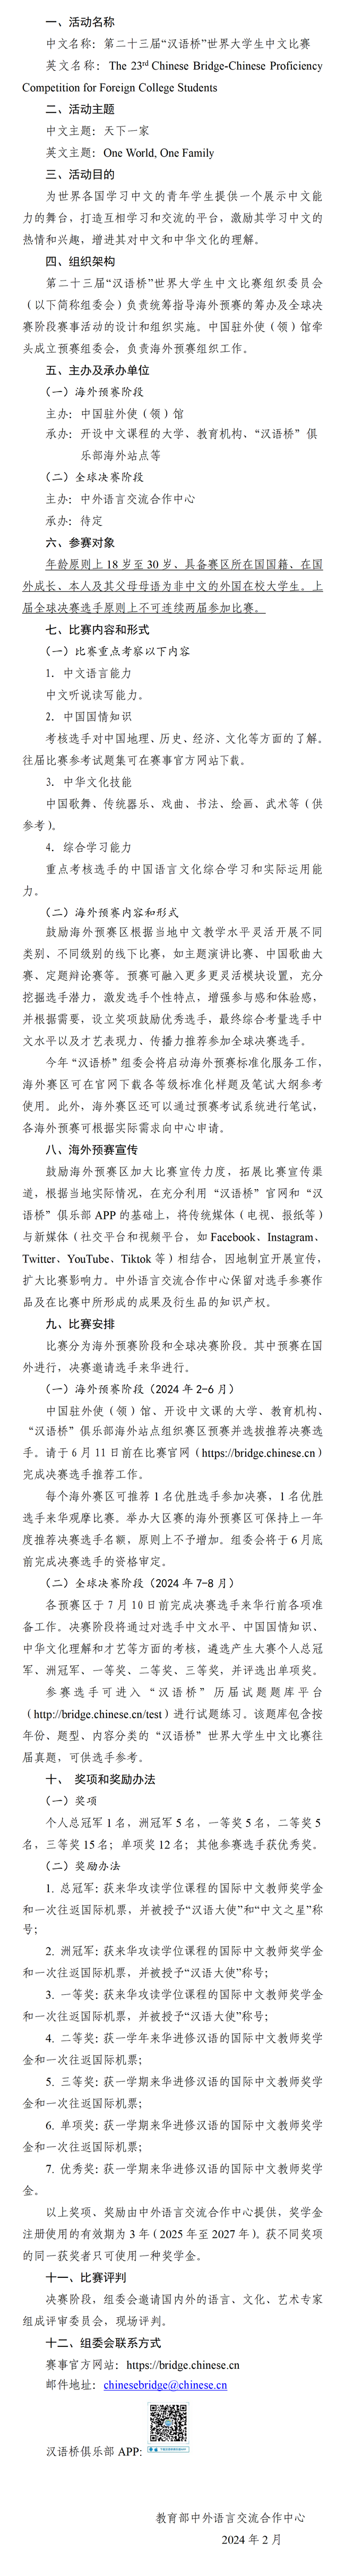 第二十三届汉语桥世界大学生中文比赛活动方案_02.png